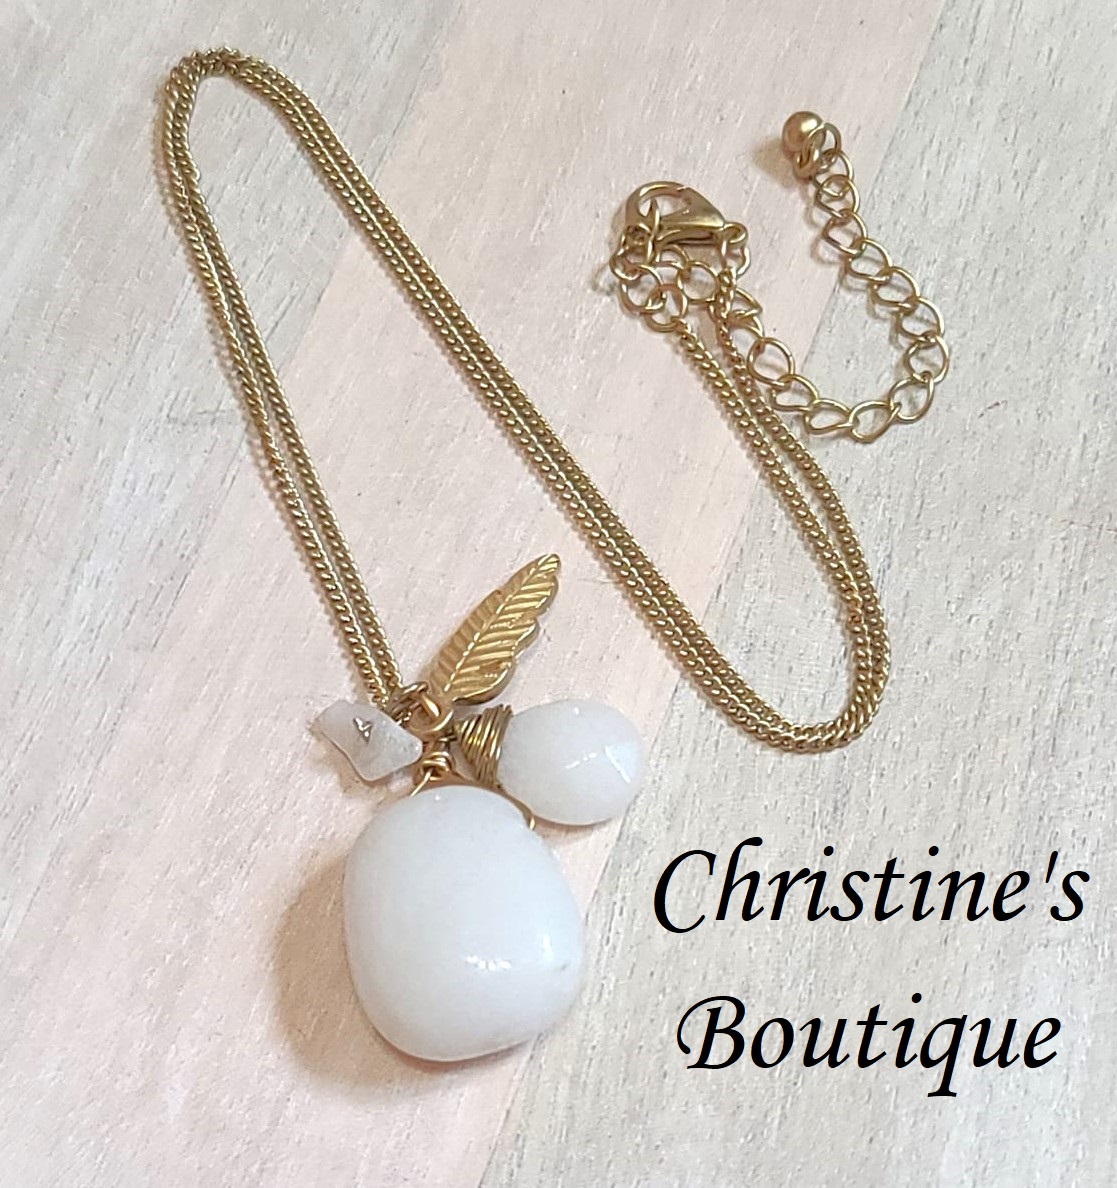 Gemstone pendant necklace, white quartz gemstone pendant, with feather charm, necklace